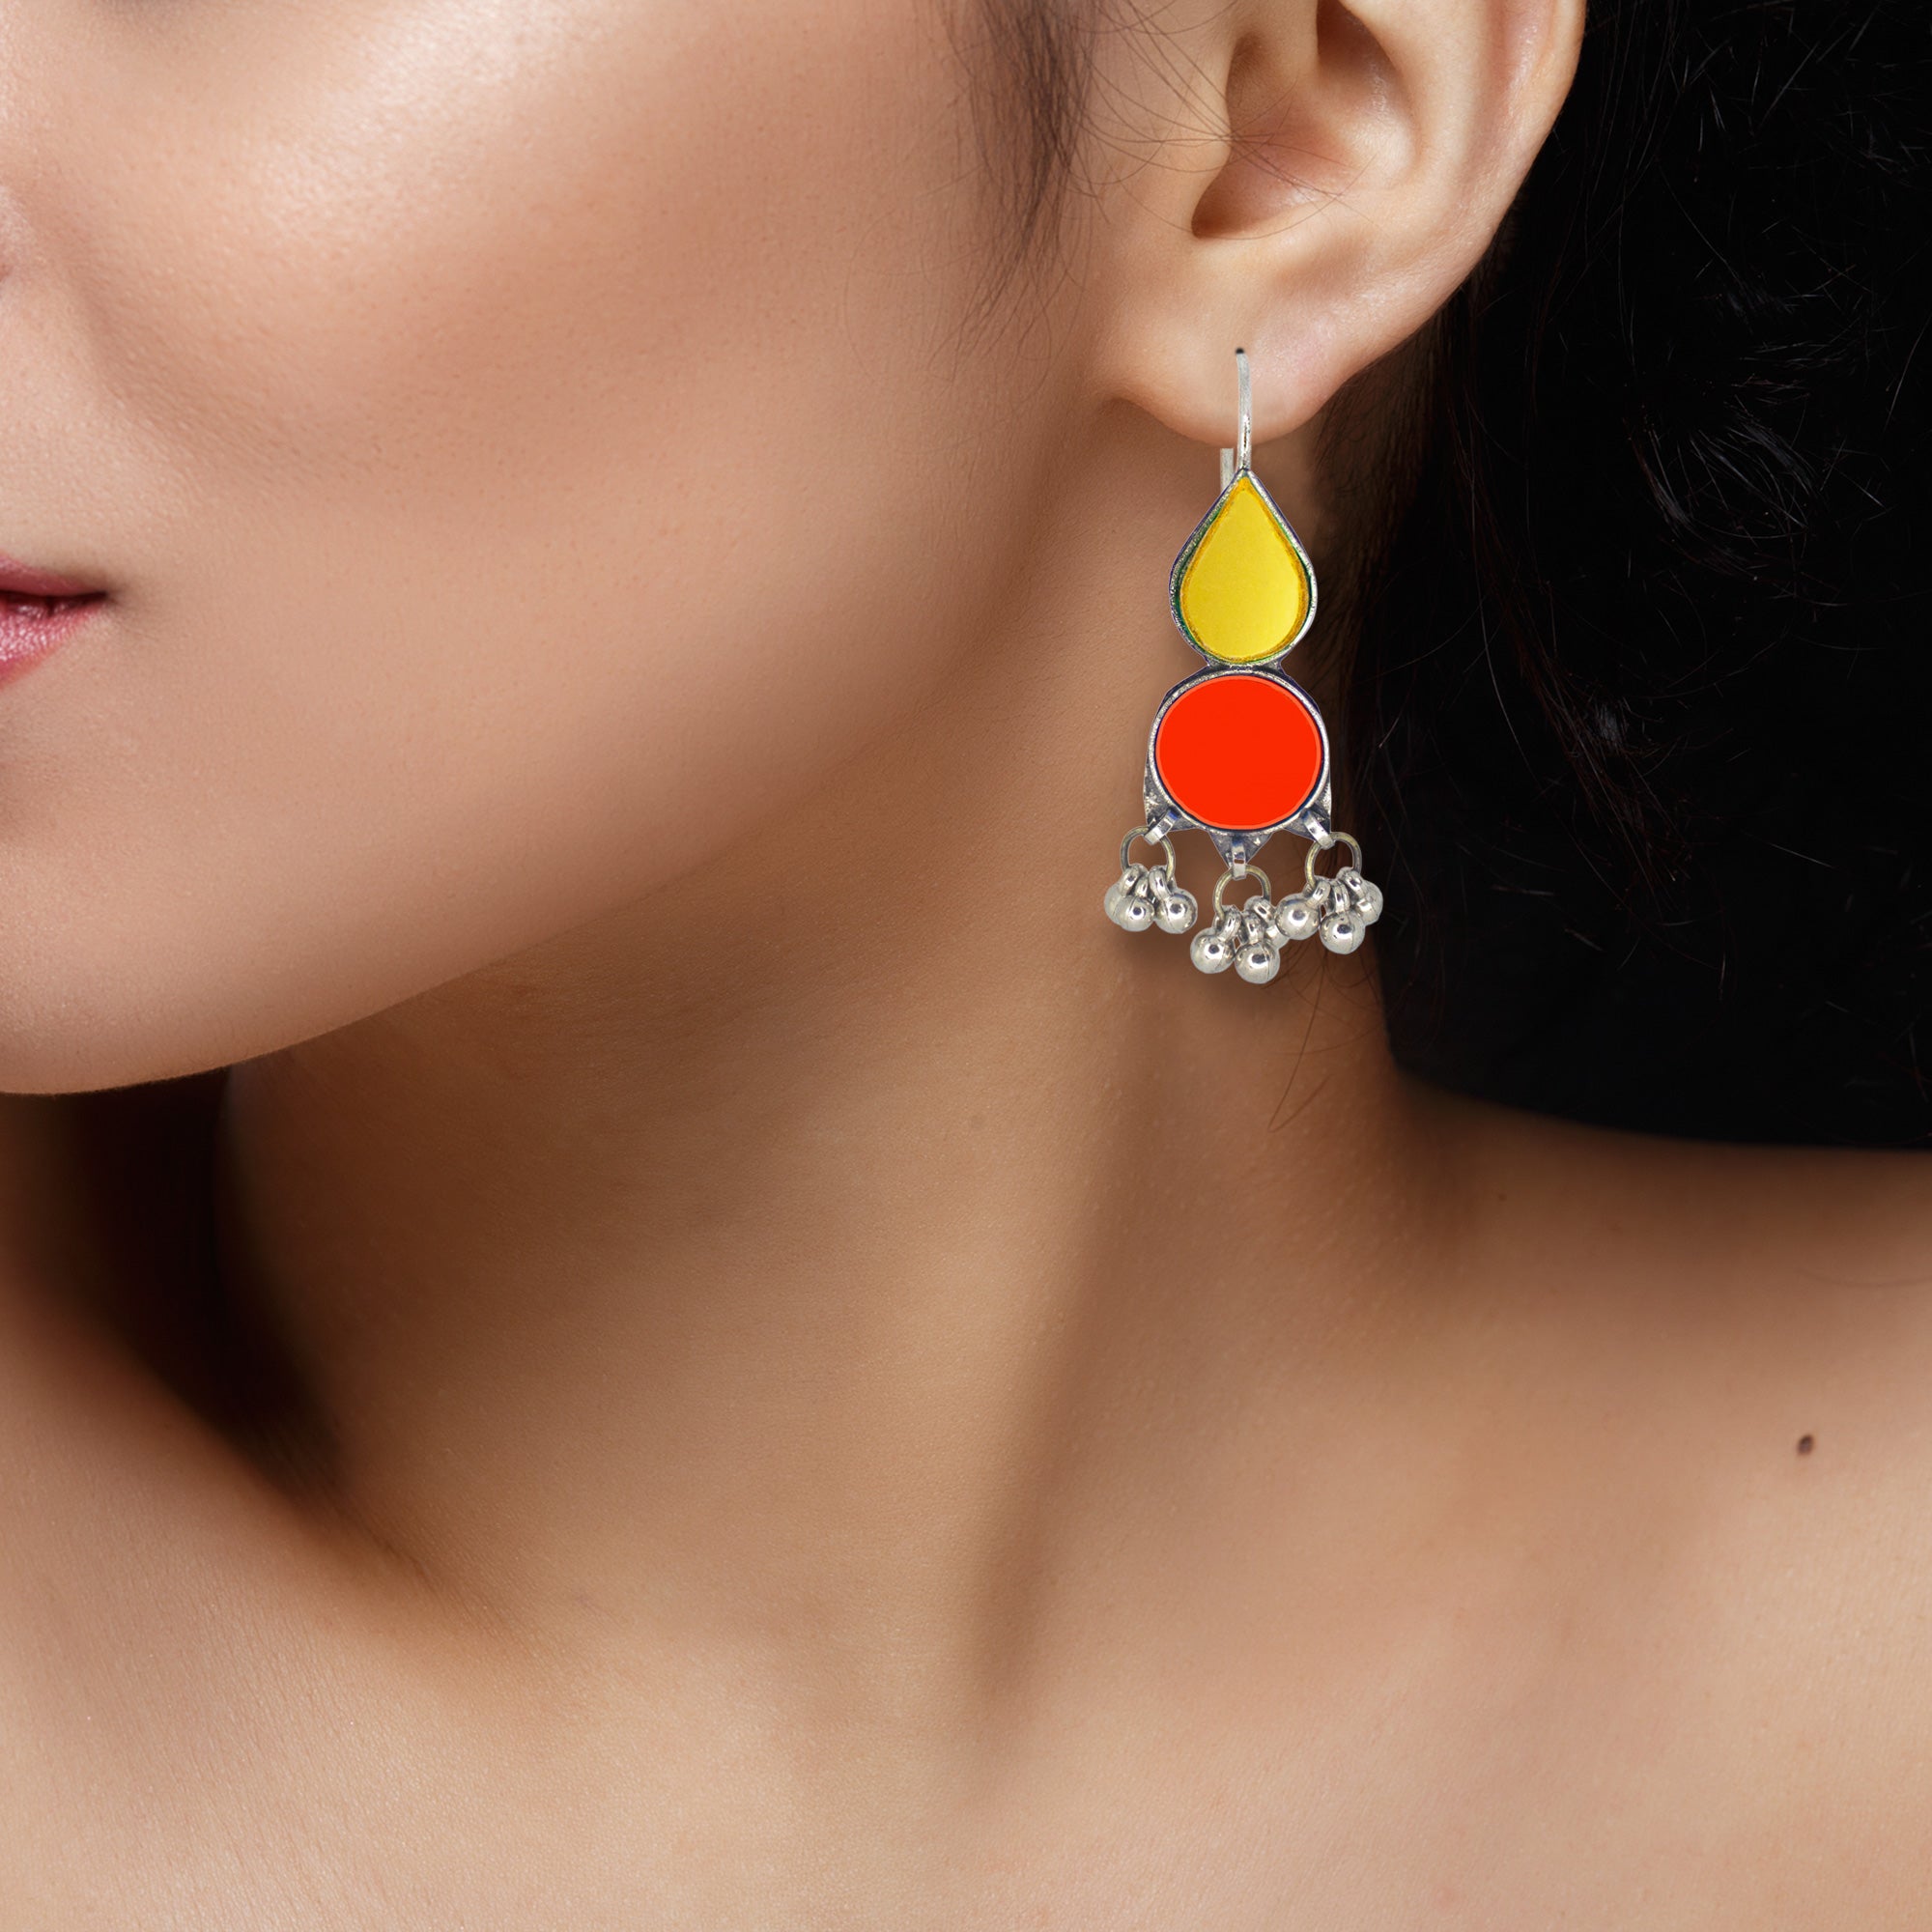 Abhinn Afghani Silver Plated Geometrical Parrot Yellow-Red Glass Dangler Earrings For Women